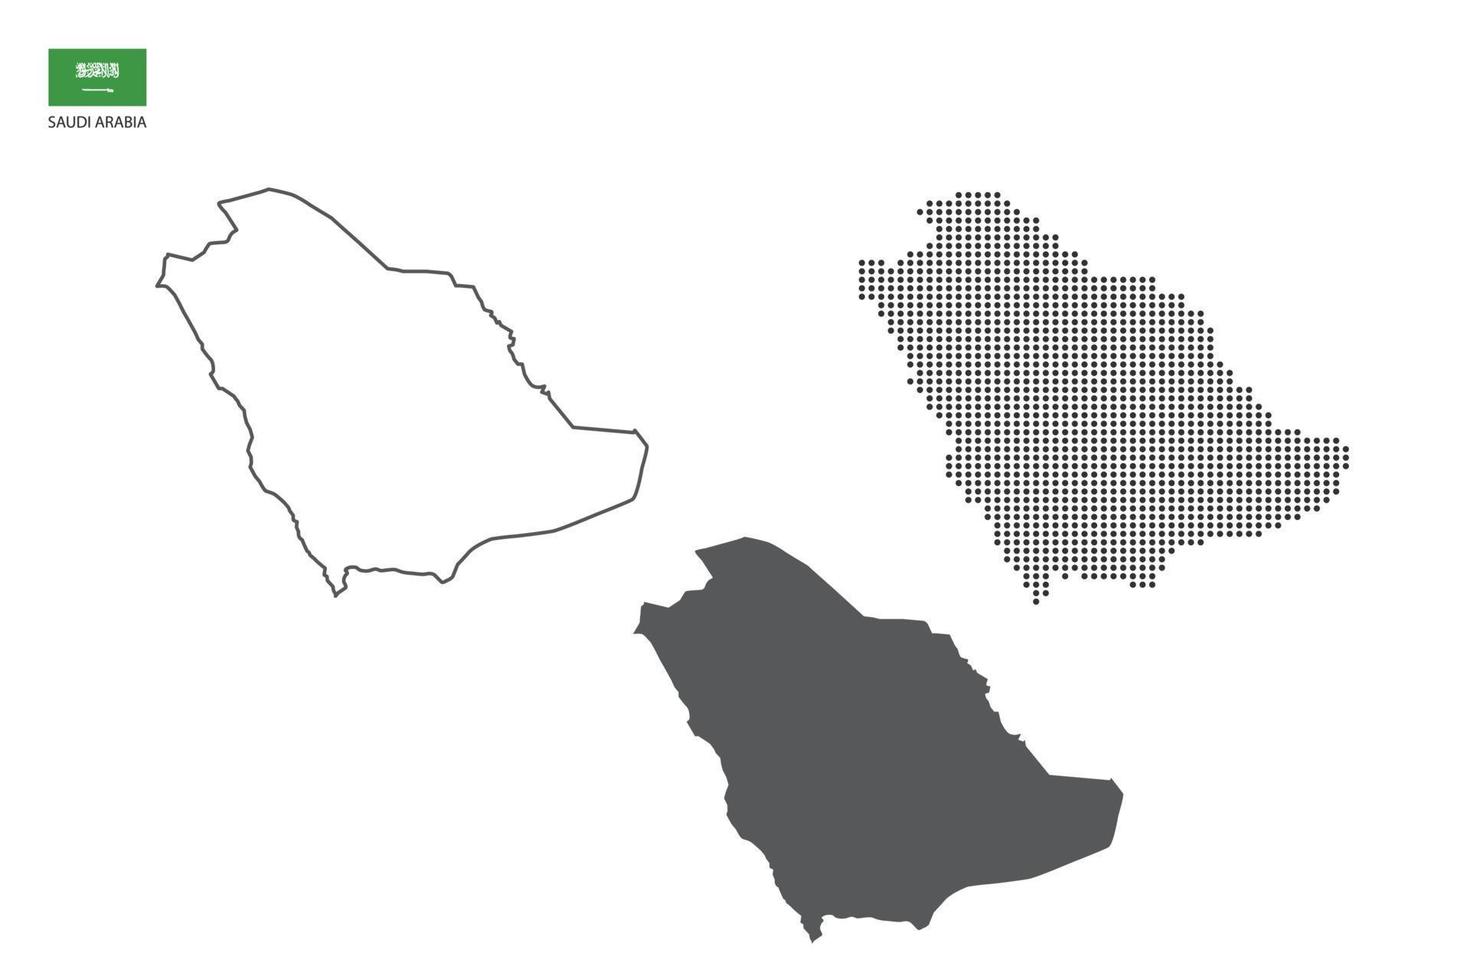 3 versiones del vector de la ciudad del mapa de arabia saudita por estilo de simplicidad de contorno negro delgado, estilo de punto negro y estilo de sombra oscura. todo en el fondo blanco.